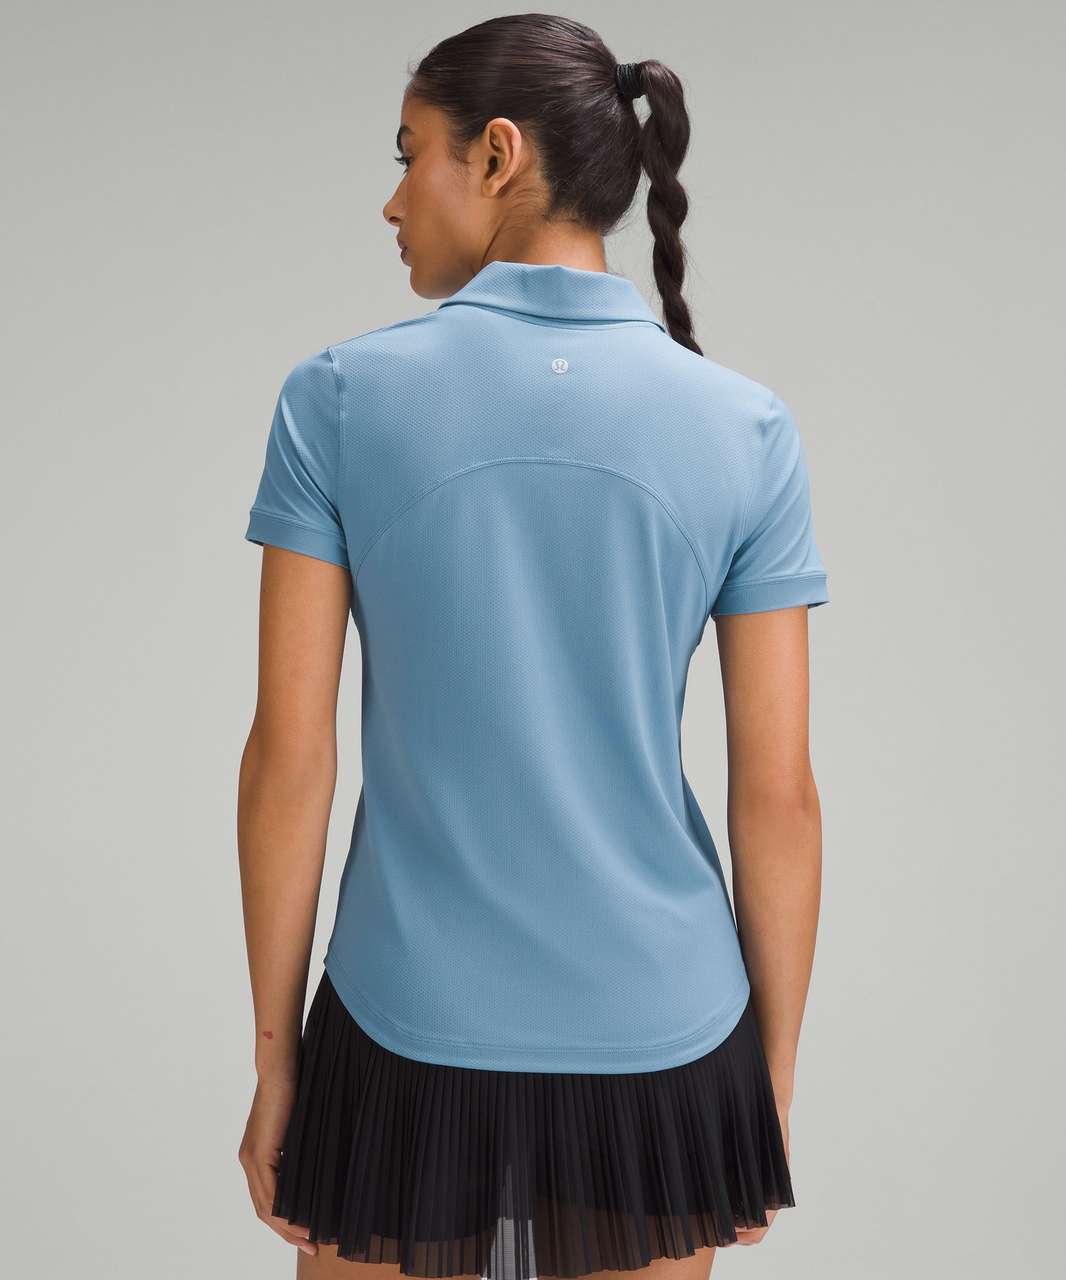 Lululemon Quick-Dry Short-Sleeve Polo Shirt - Utility Blue